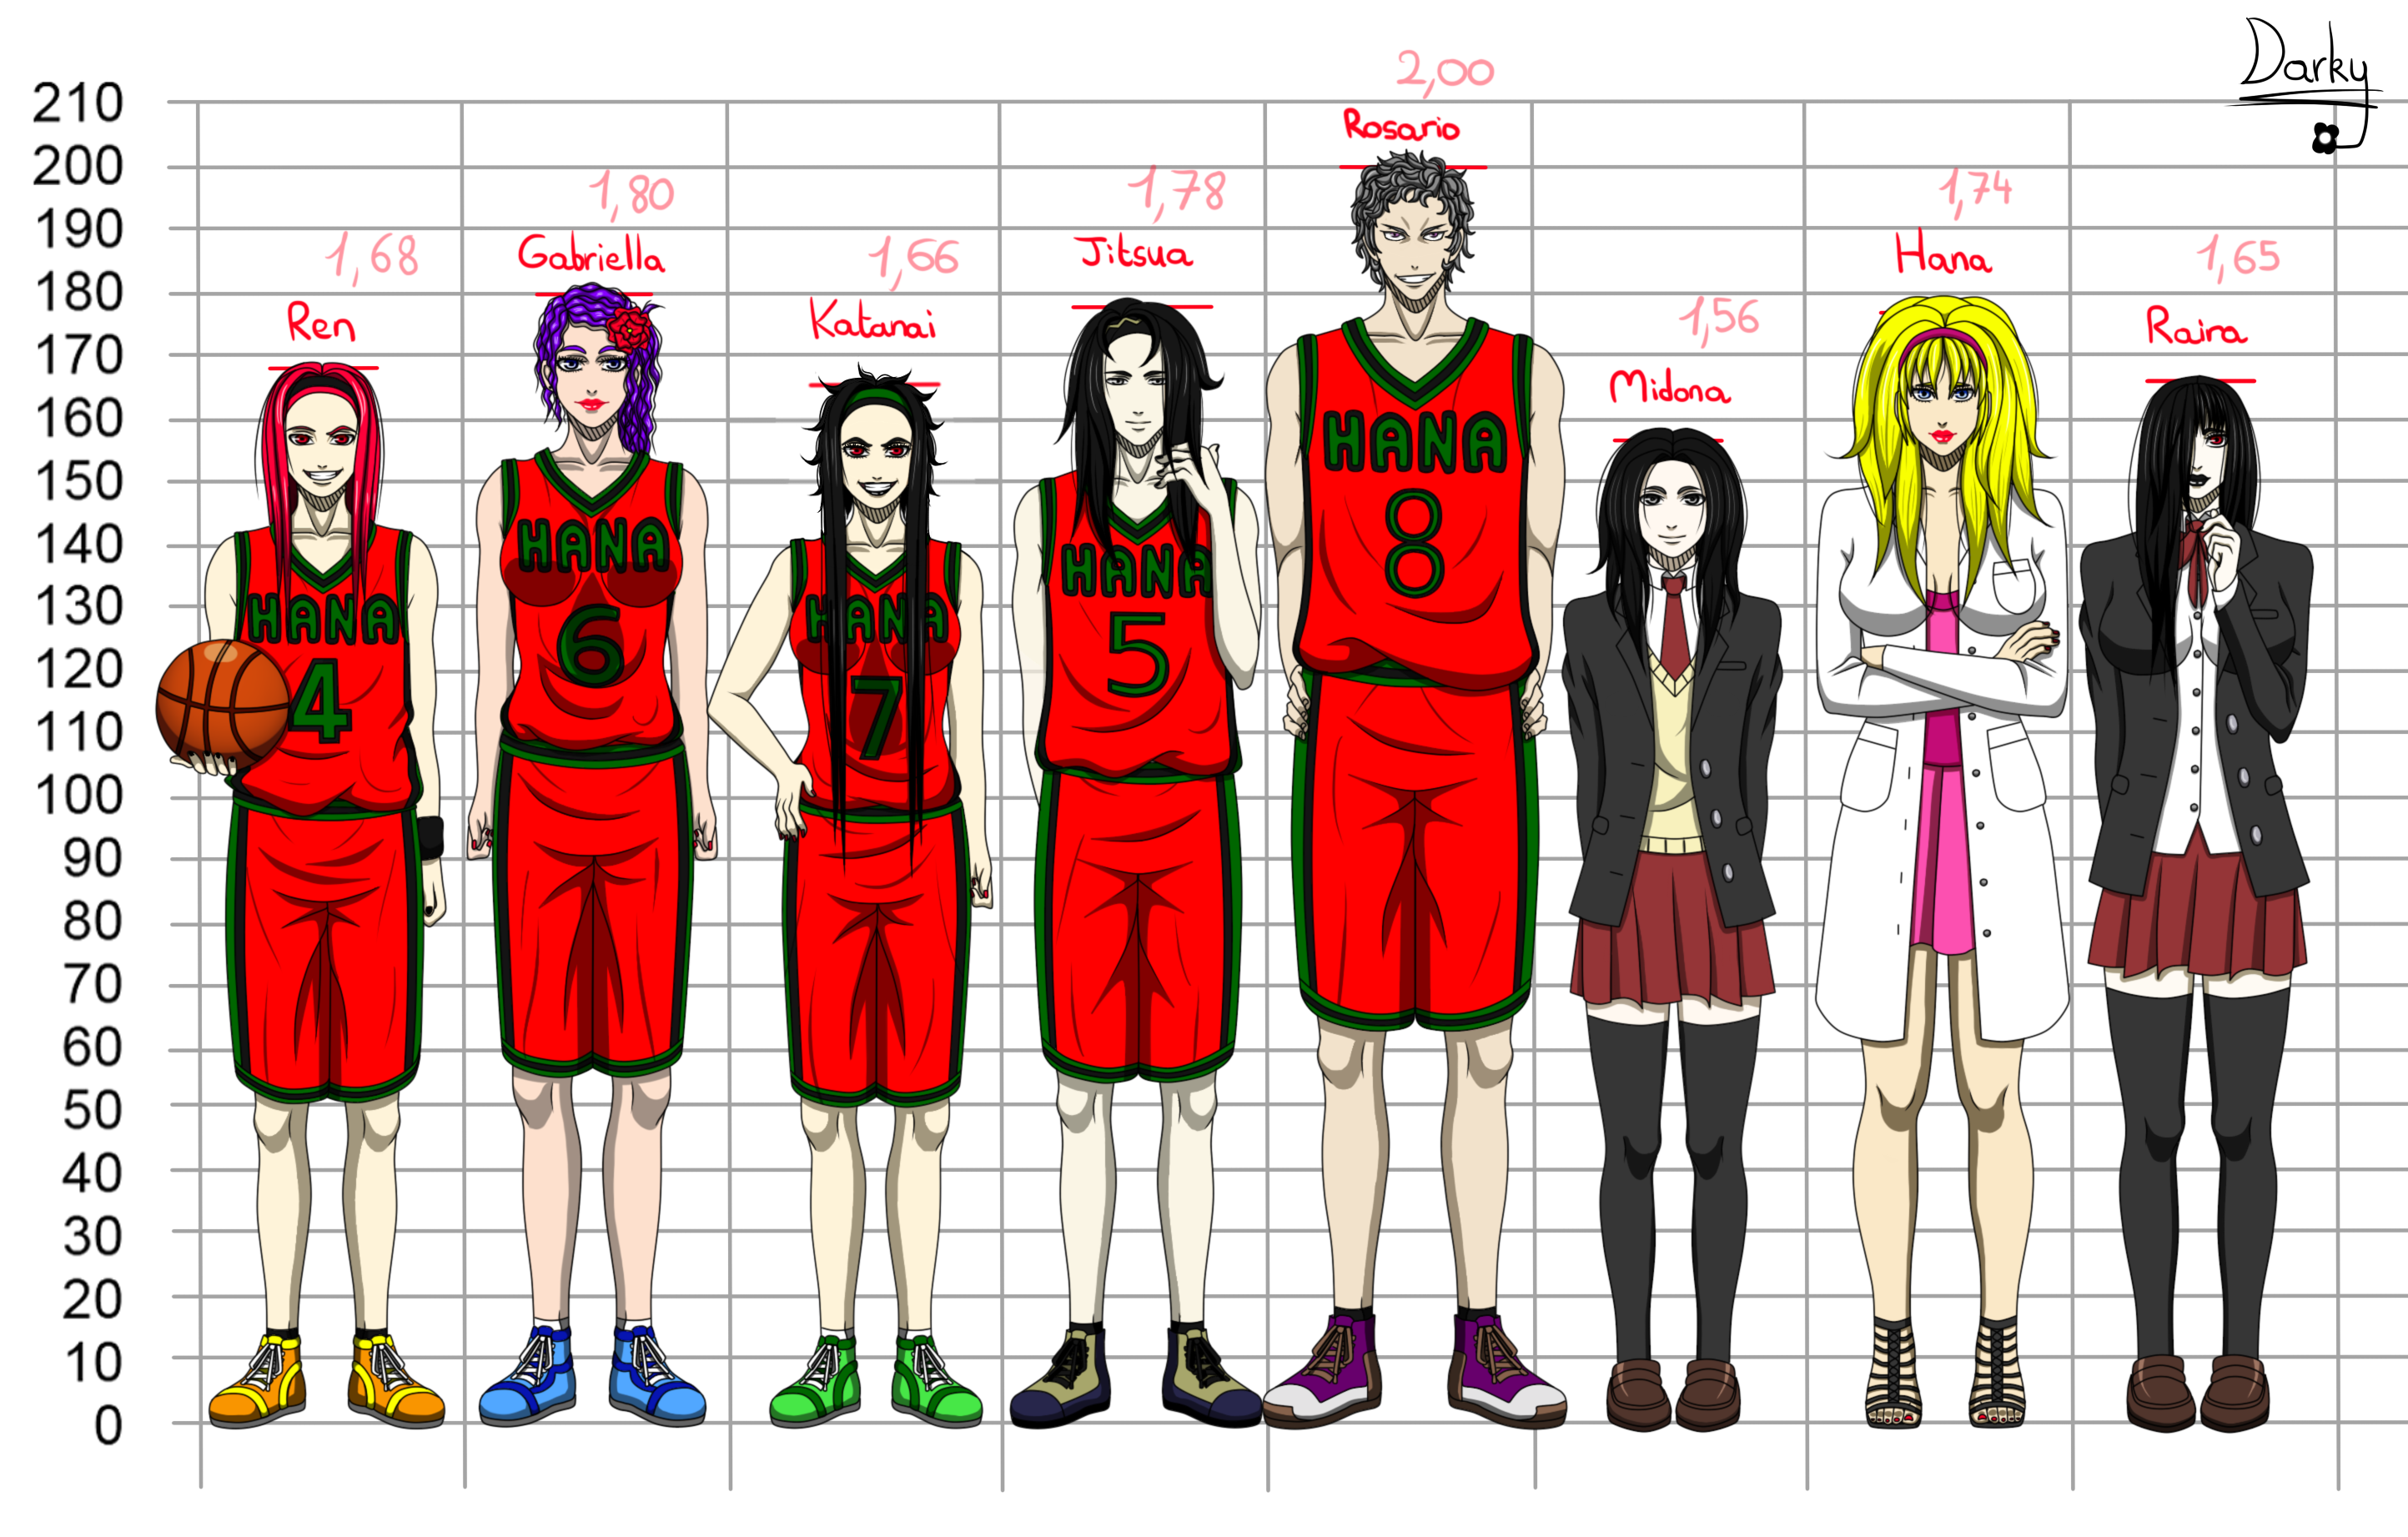 Рост персонажей баскетбол Куроко. Куроко персонажи рост. Рост персонажей баскетбол короко. Рост игроков баскетбол Куроко.